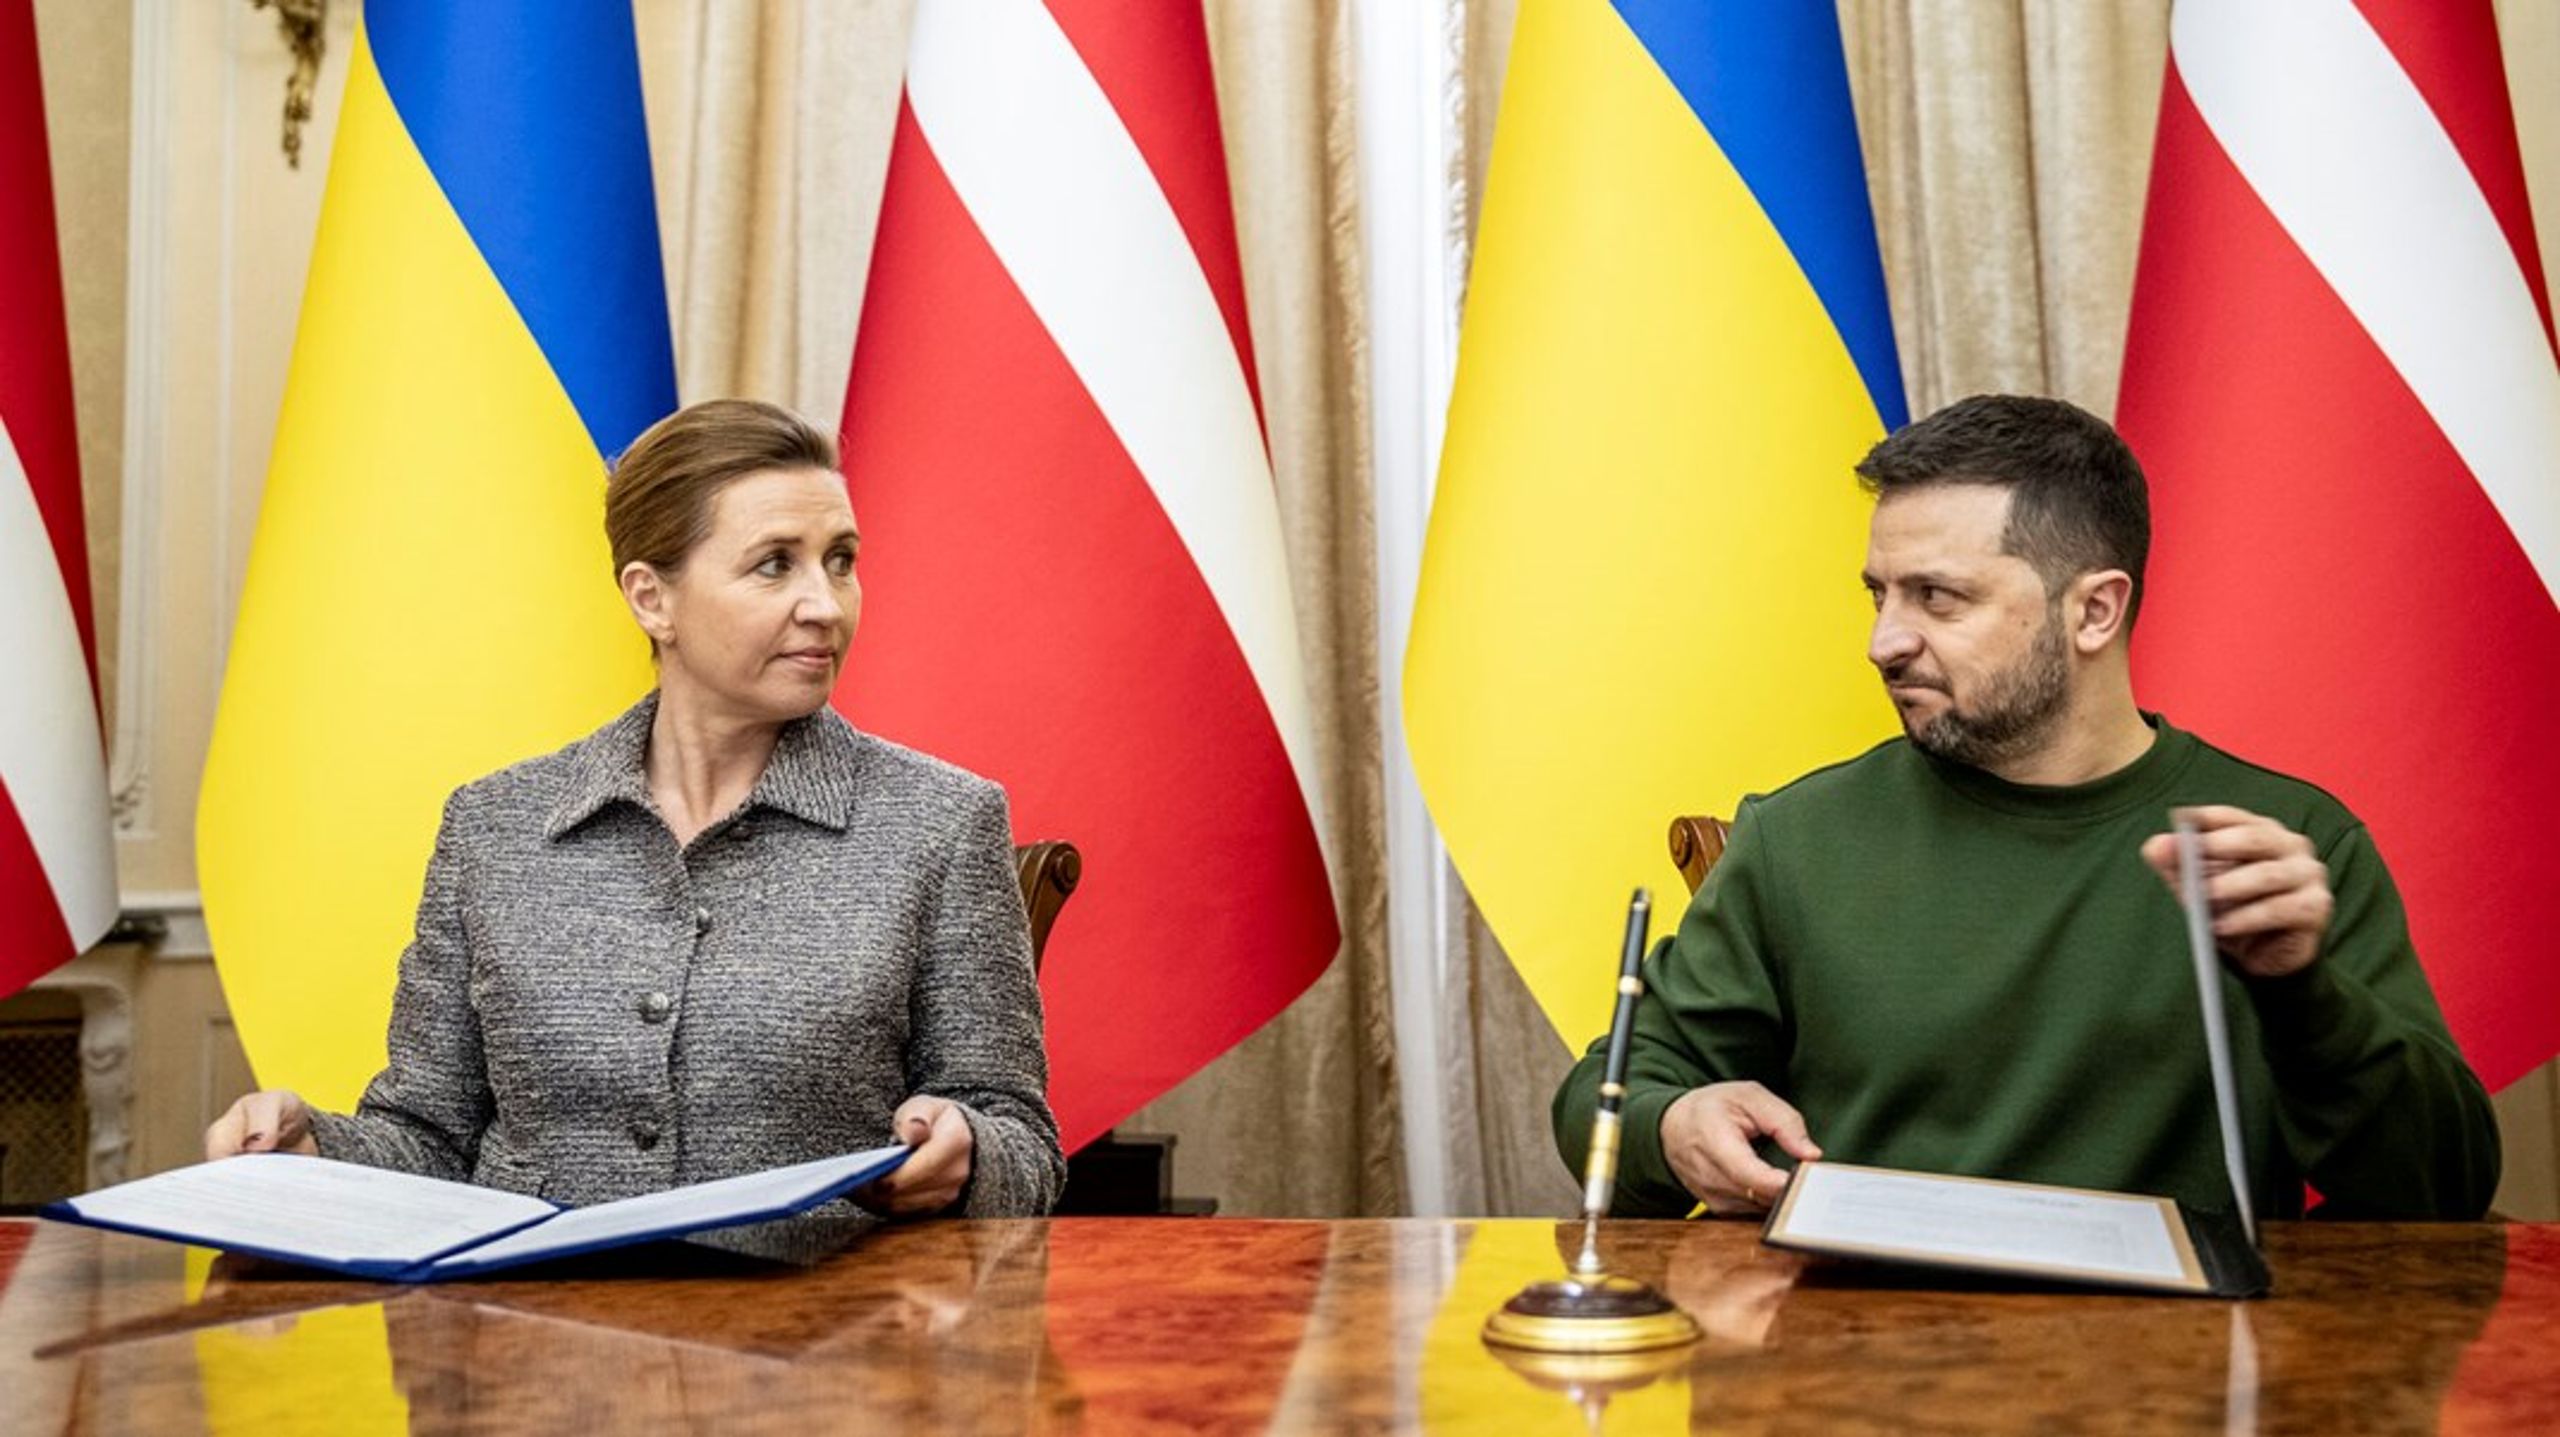 I fredags skrev statsminister Mette Frederiksen (S) under på et sikkerhedstilsagn til Ukraine. Mandag mødes hun i Paris med øvrige toppolitikere for at diskutere, hvad der mere kan gøres for det krigsplagede land.